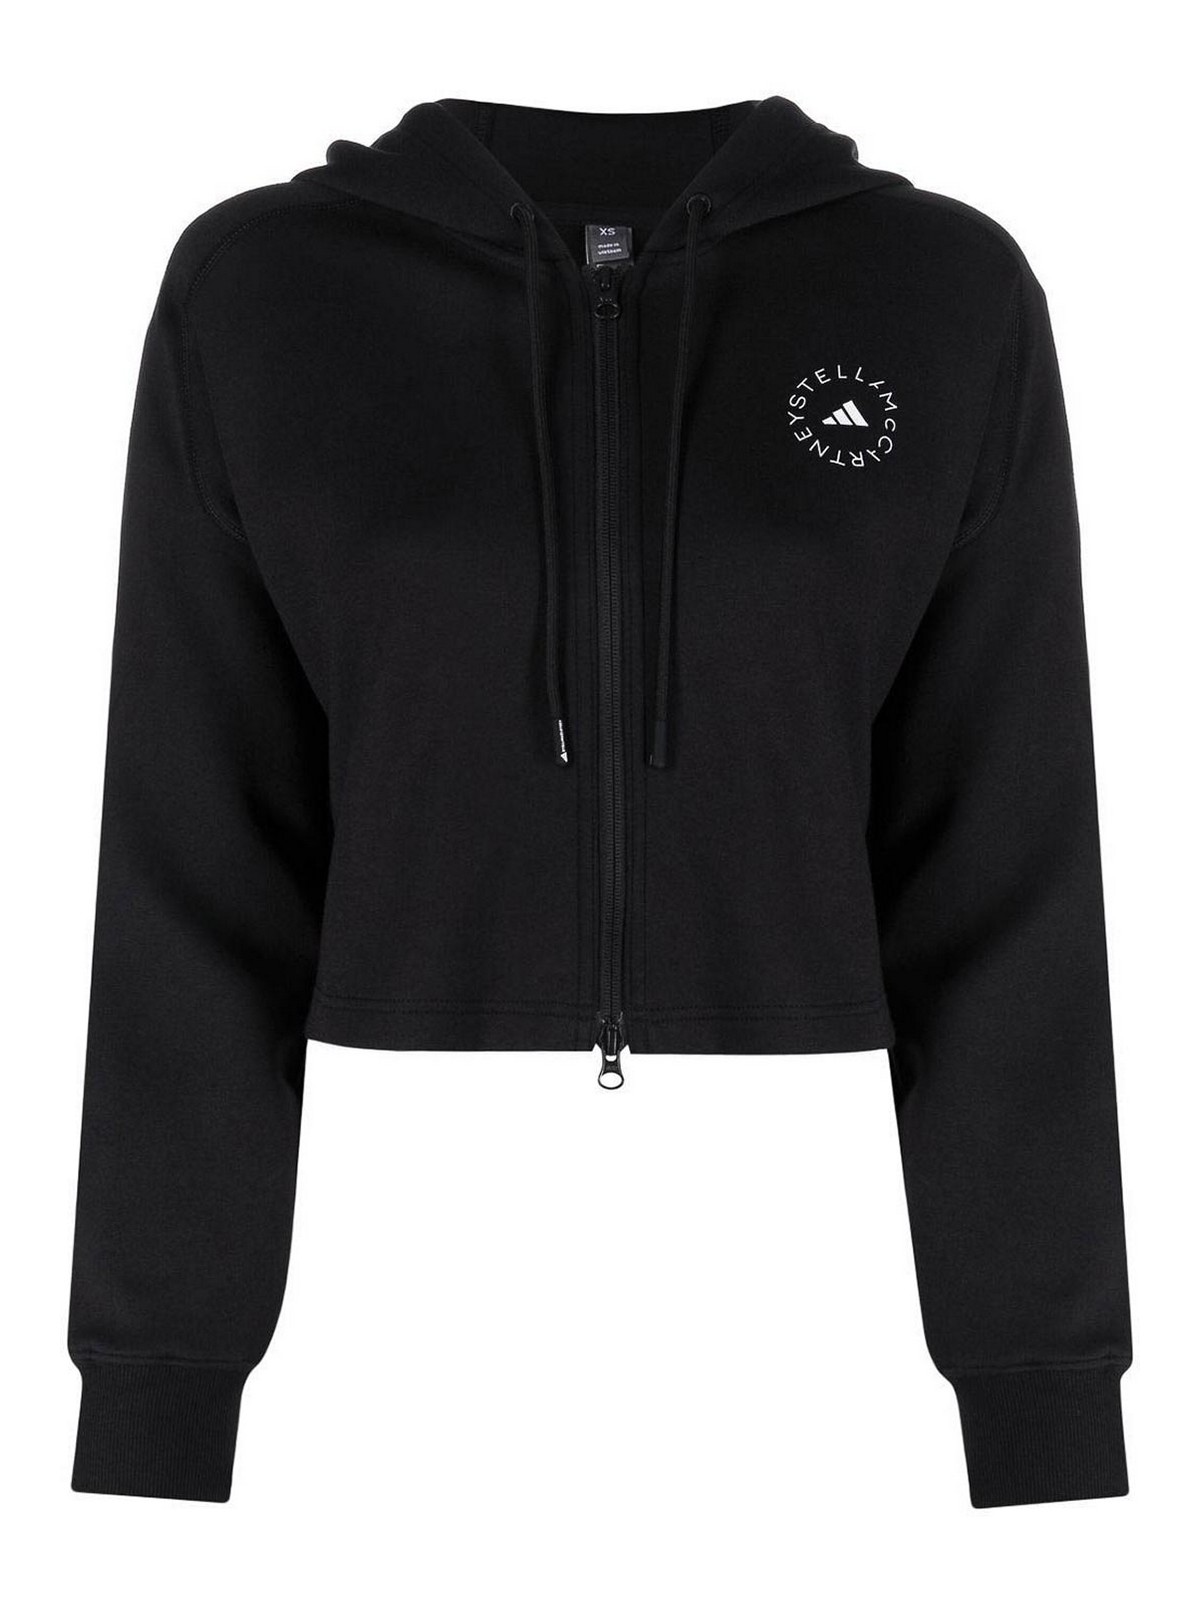 Adidas By Stella Mccartney Sweatshirt With Logo In Black